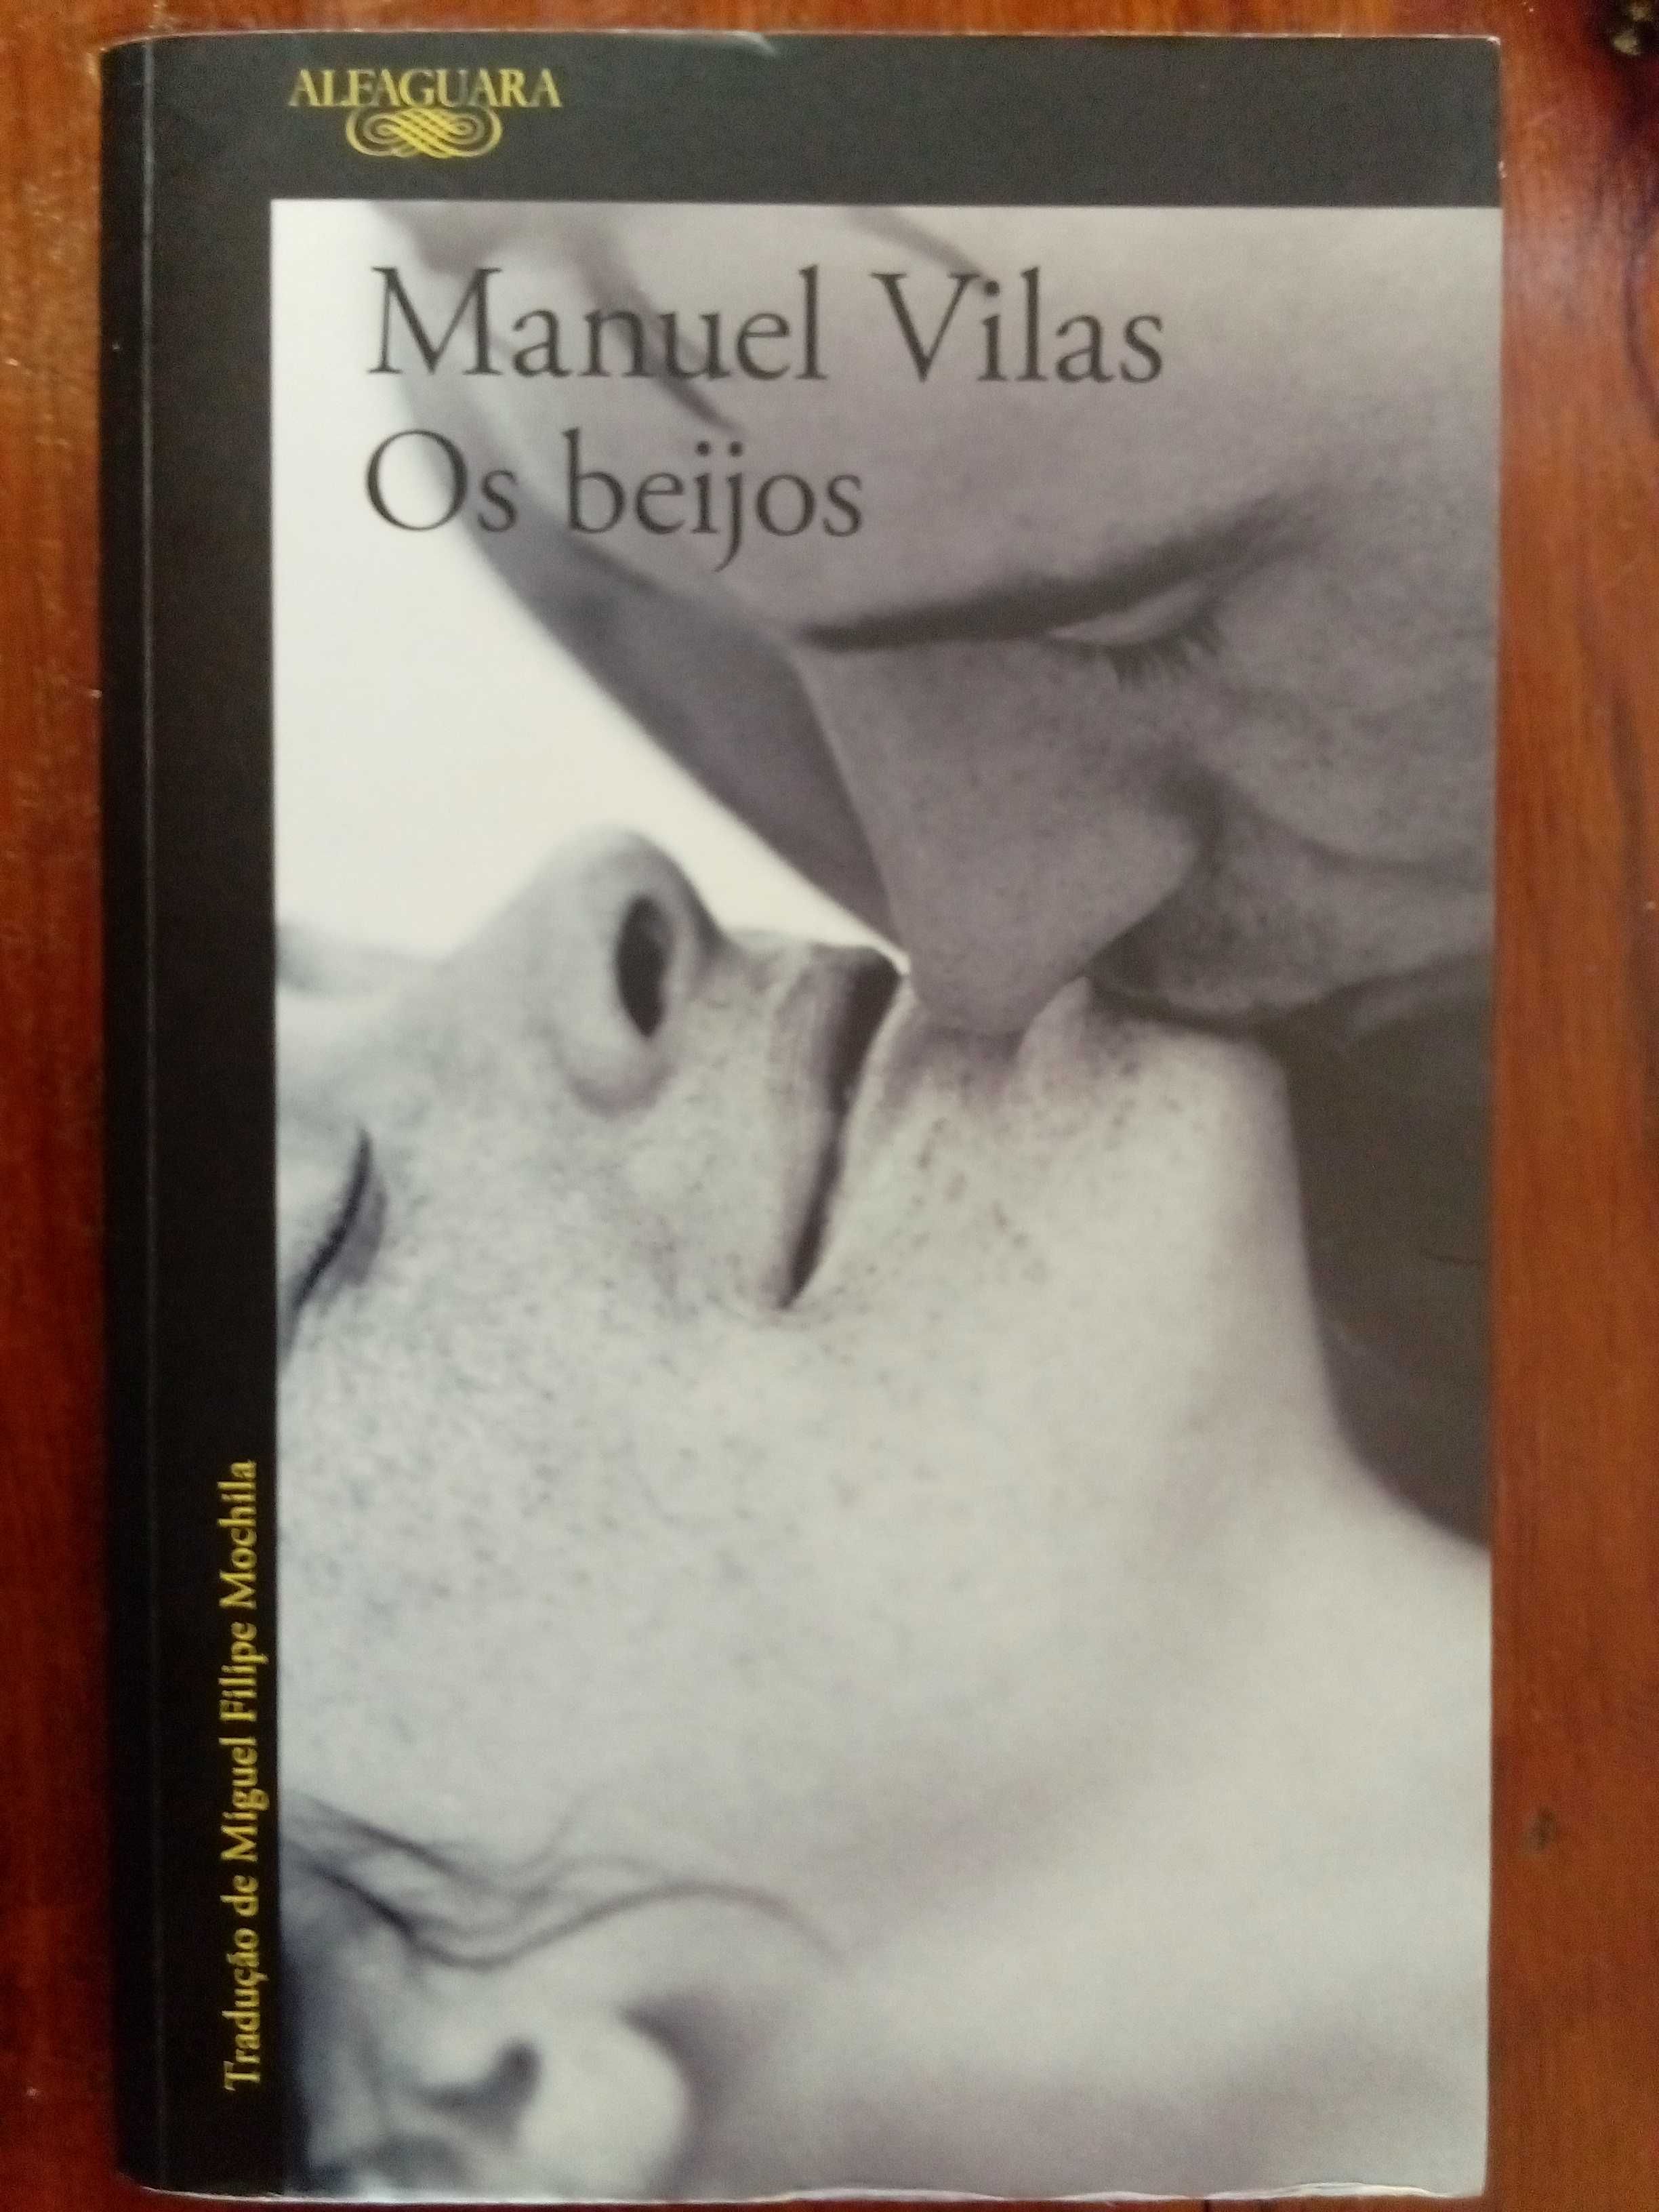 Manuel Vilas - Os beijos